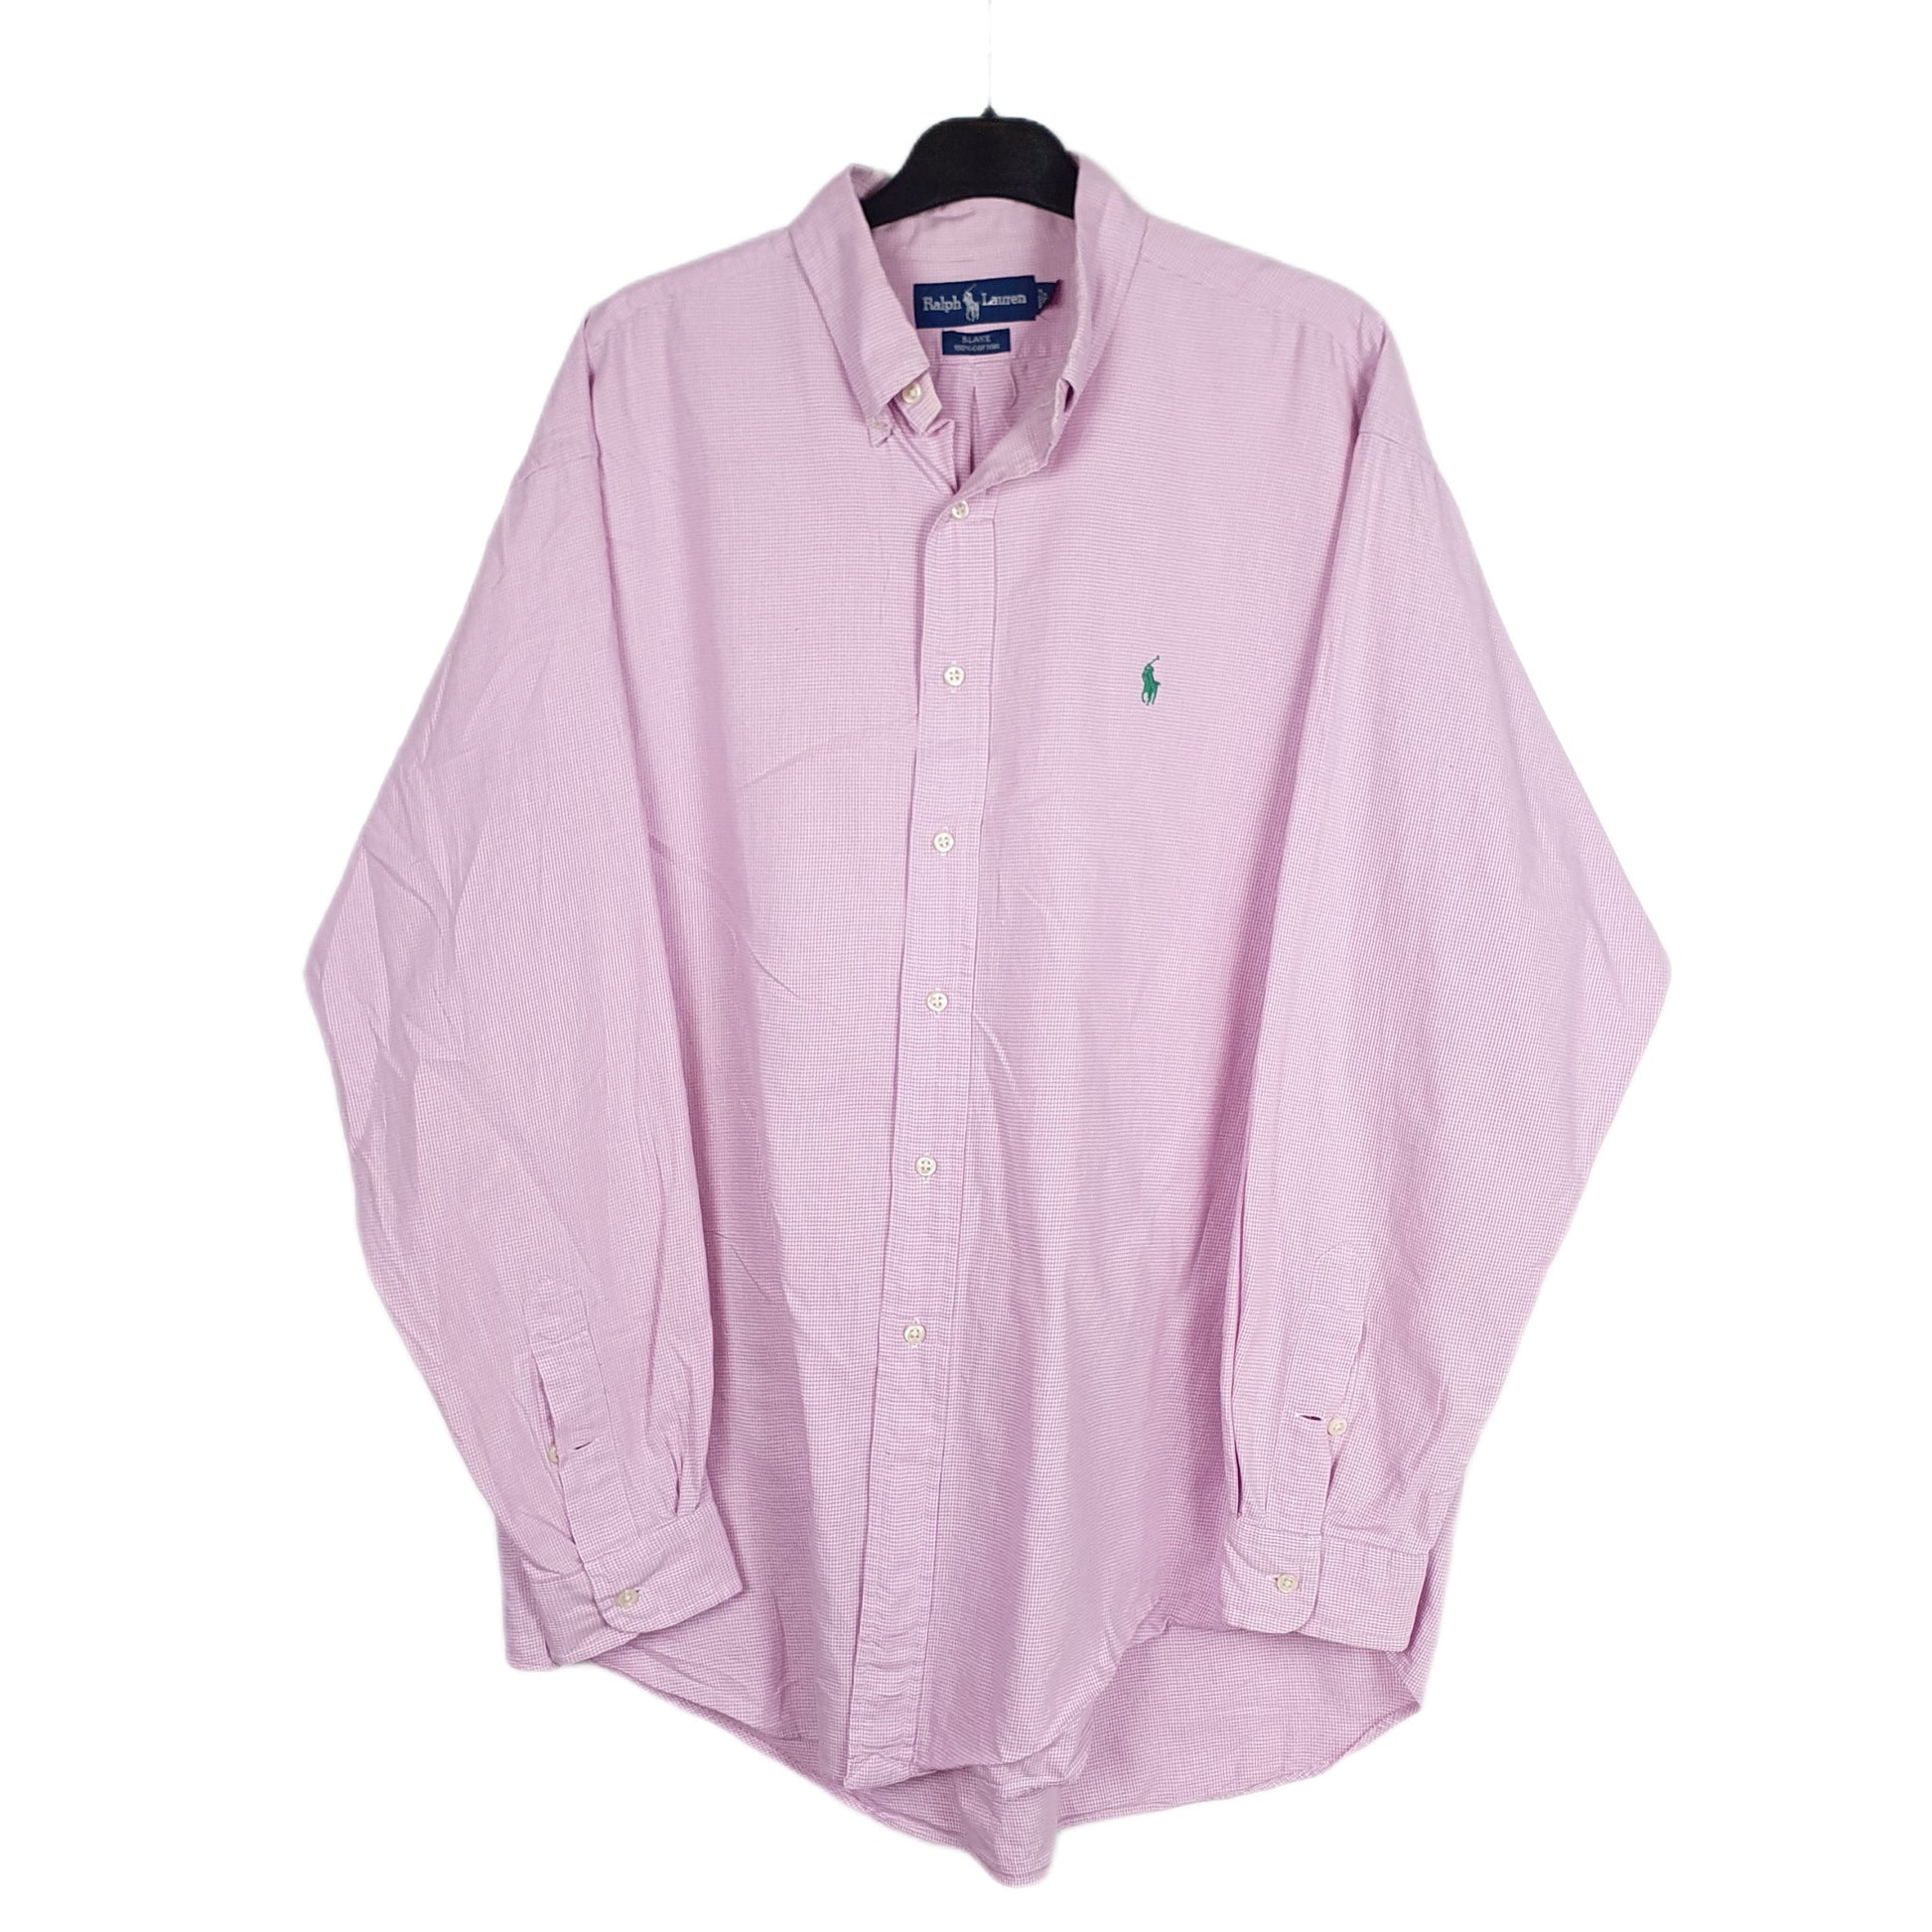 Pink Polo Ralph Lauren Long Sleeve Shirt